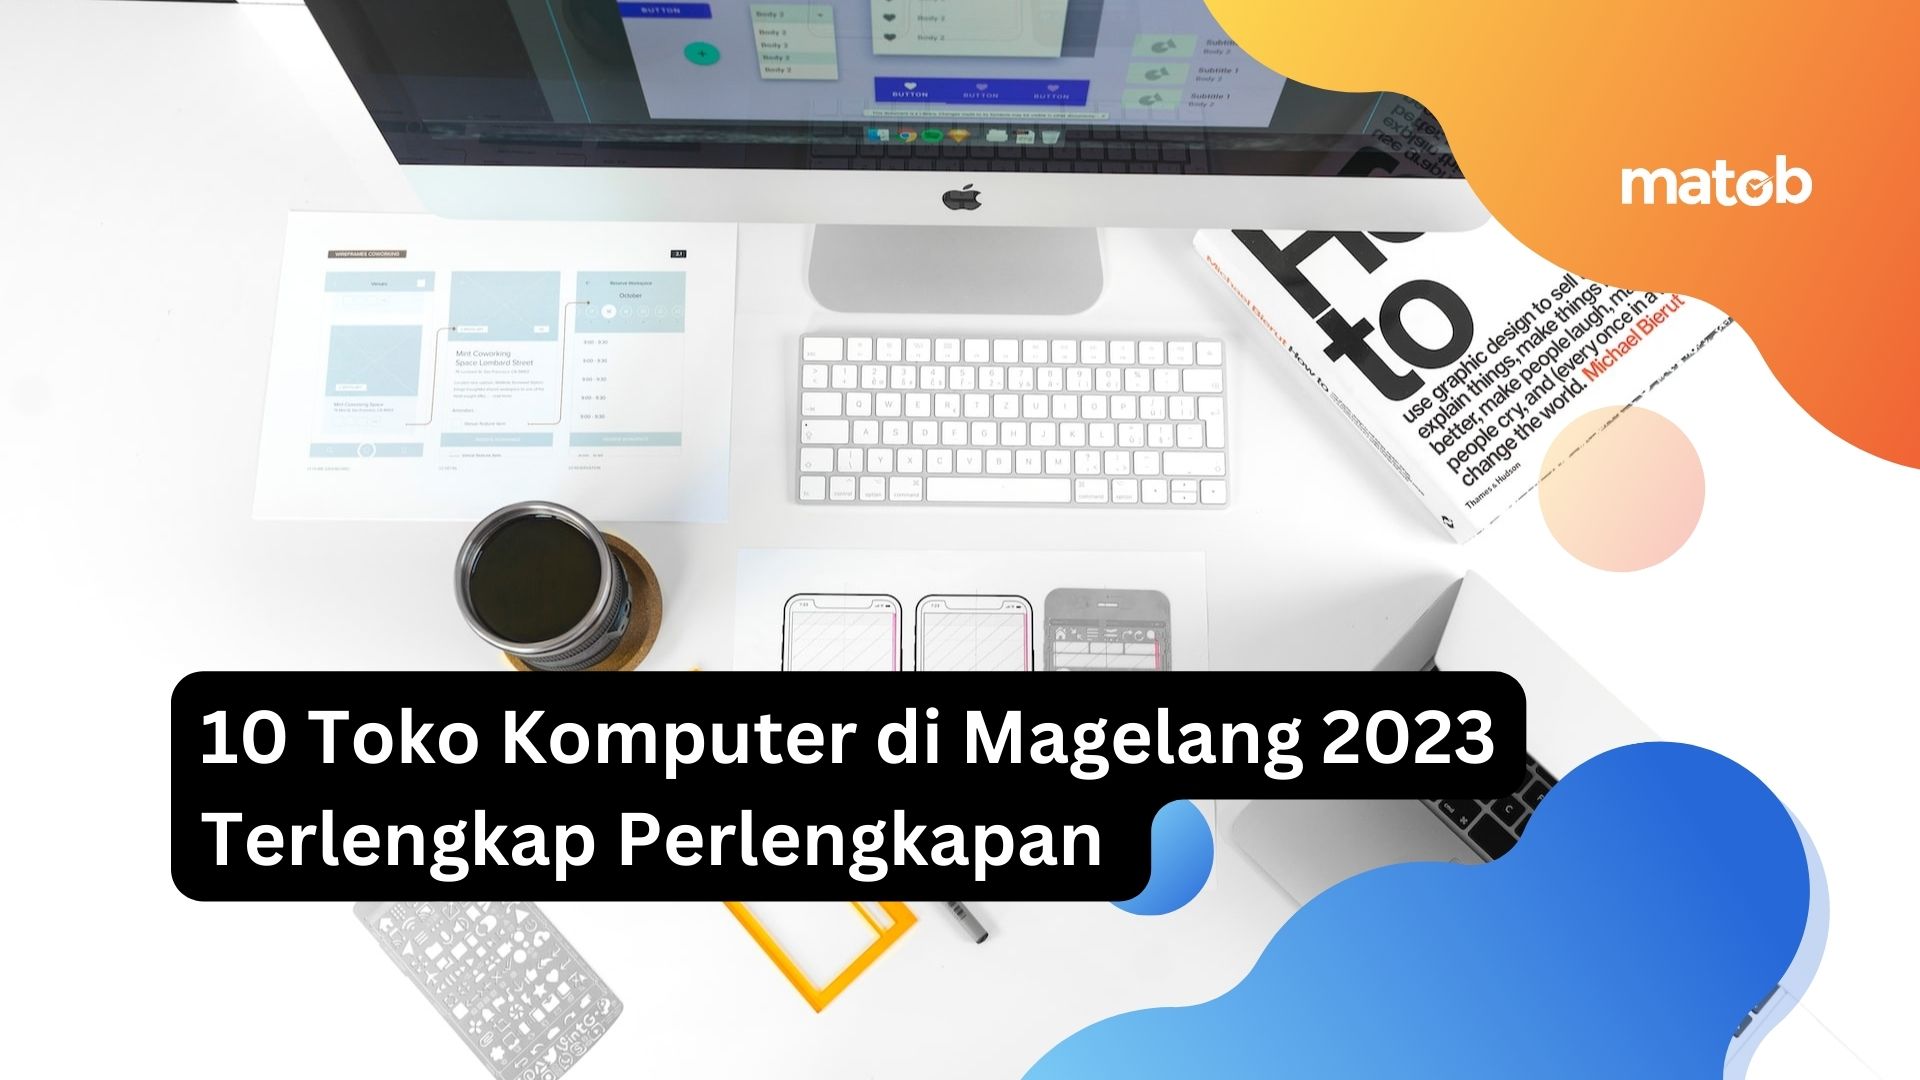 10 Toko Komputer di Magelang 2023 Terlengkap Perlengkapan